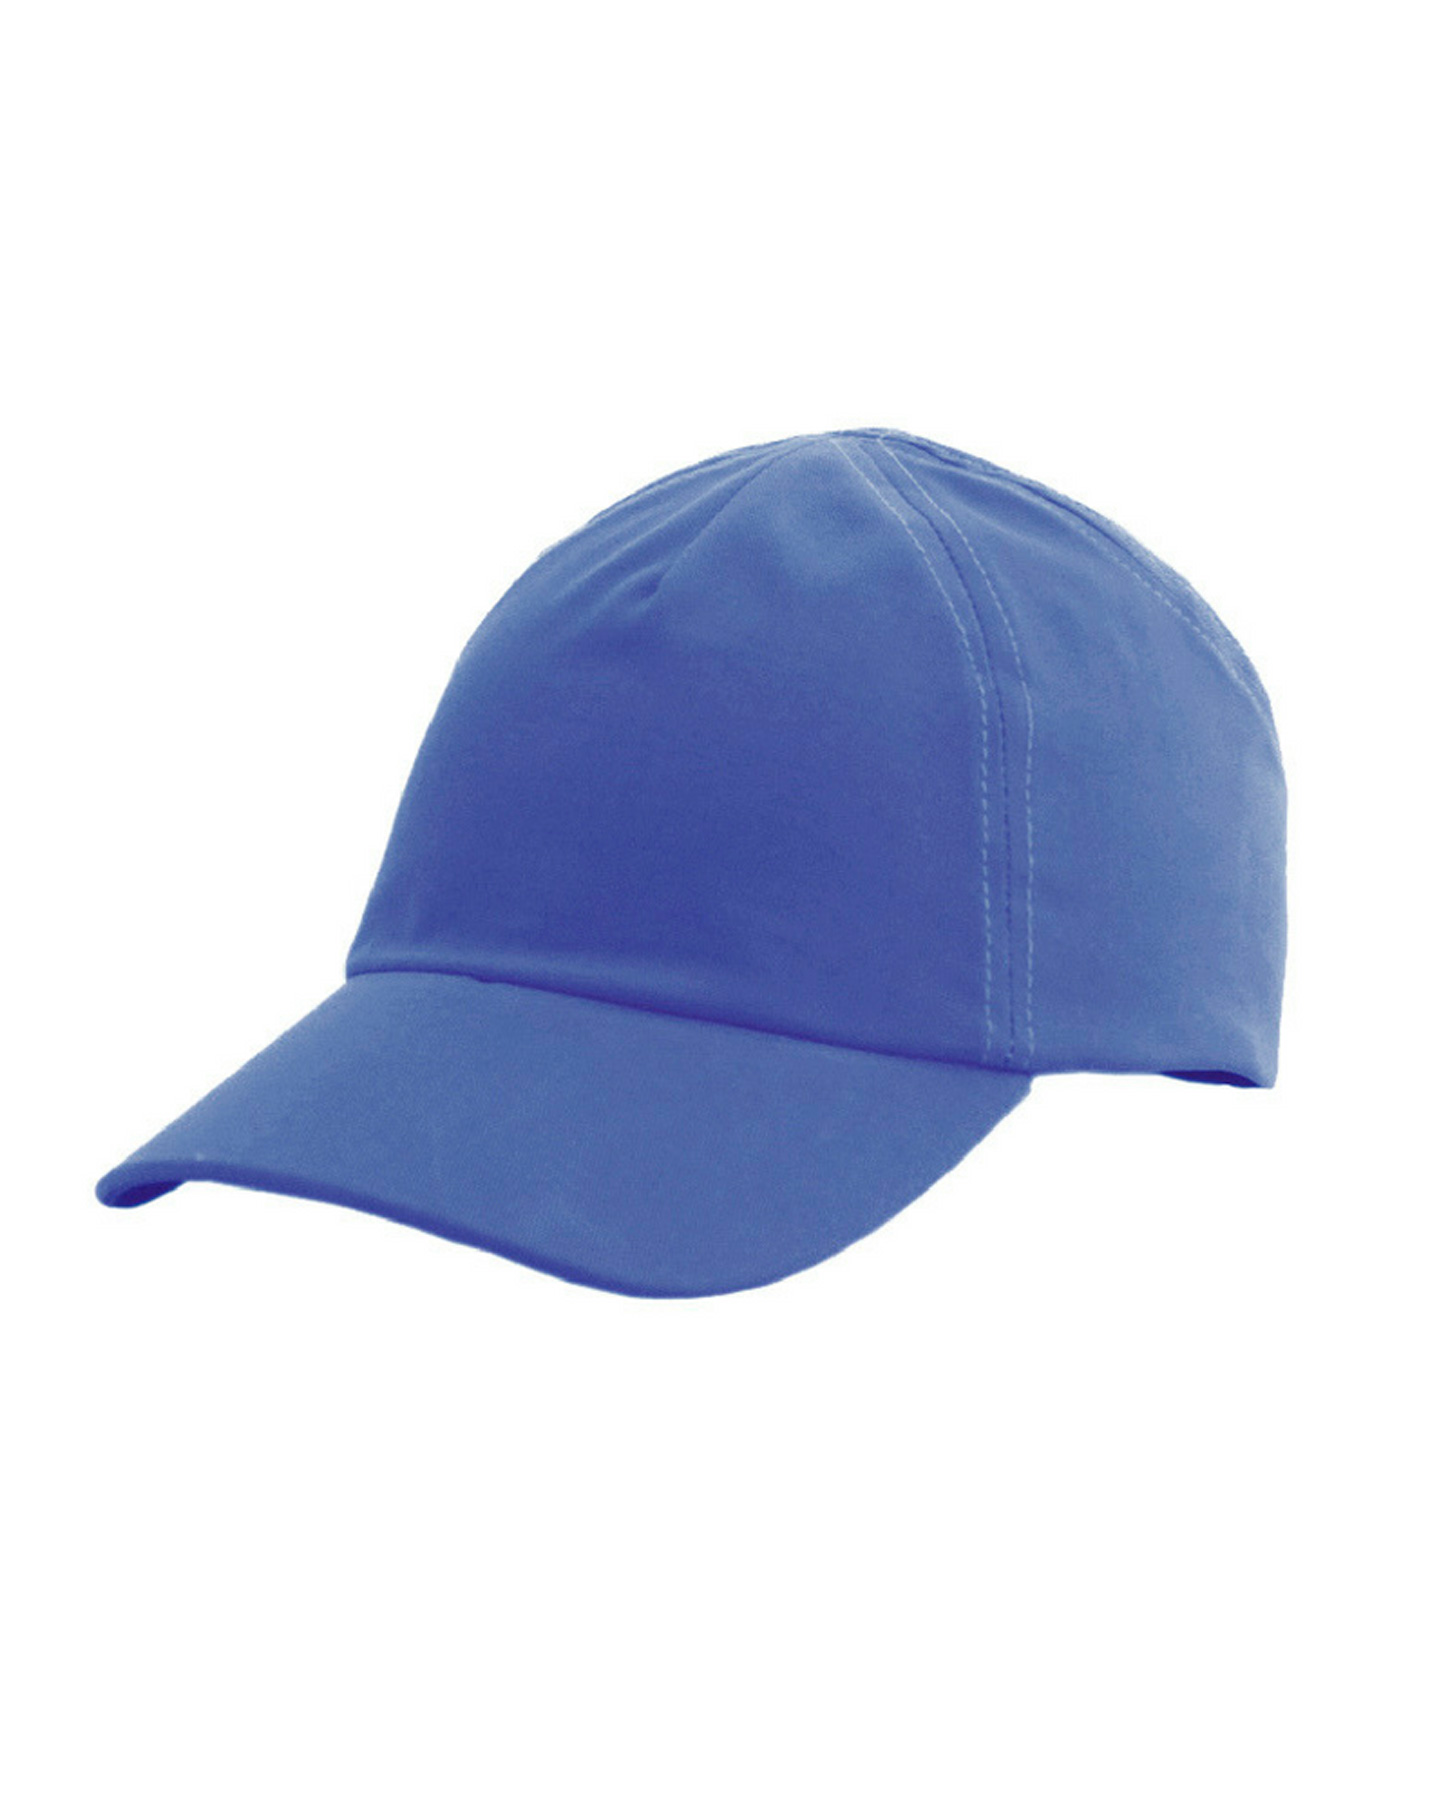 КАСКЕТКА-бейсболка защитная "RZ FavoriT CAP" РОСОМЗ™, цвет: синий (95518)